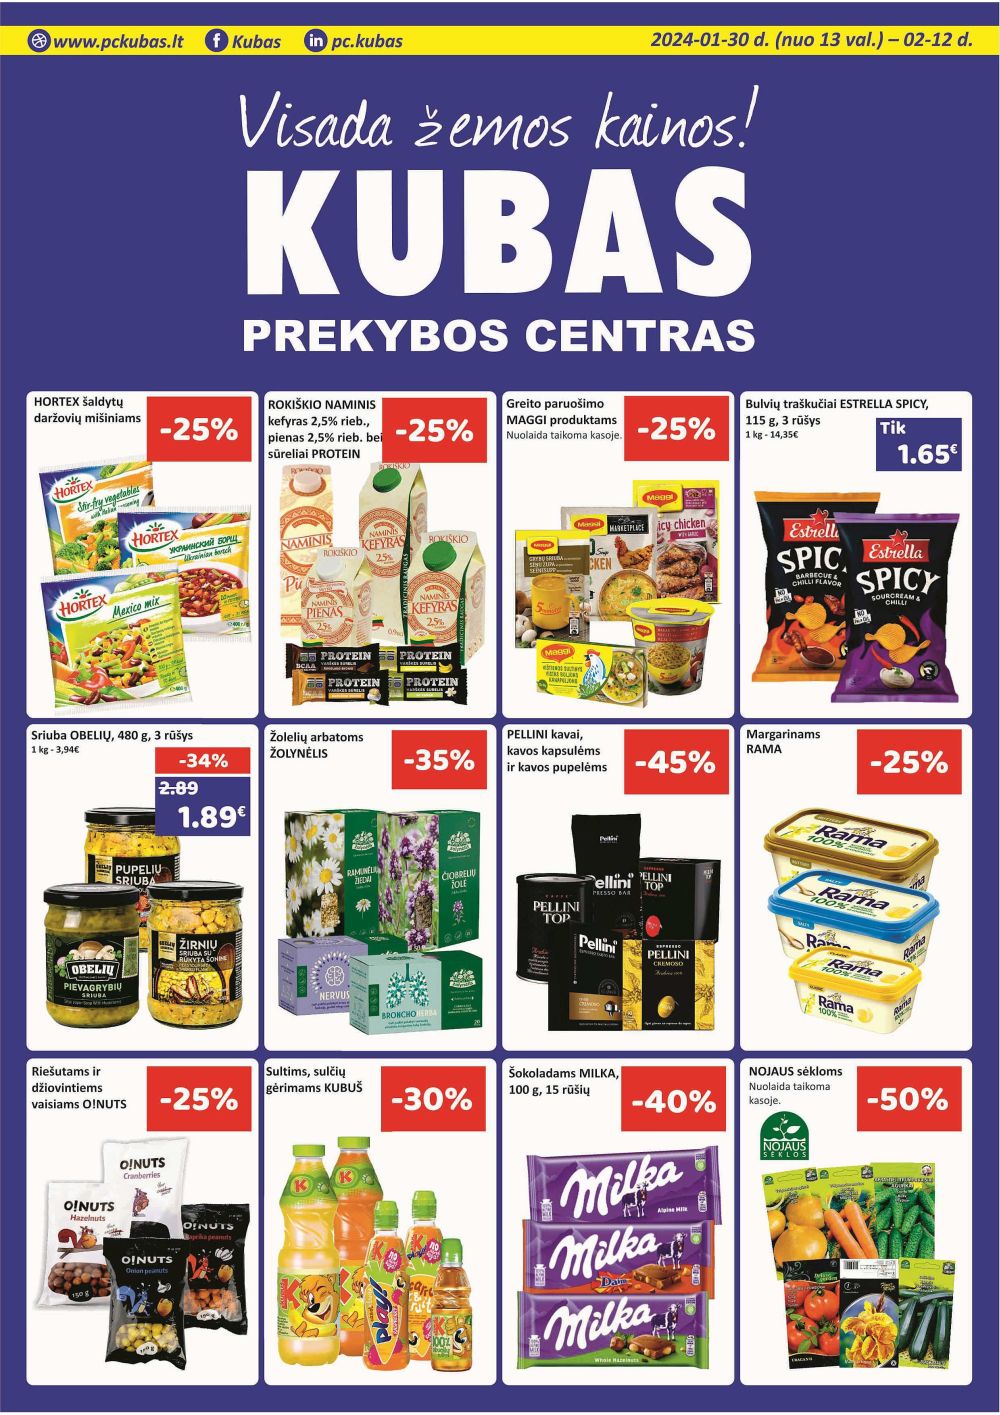 kubas - KUBAS (2024 01 30 - 2024 02 12) - page: 1